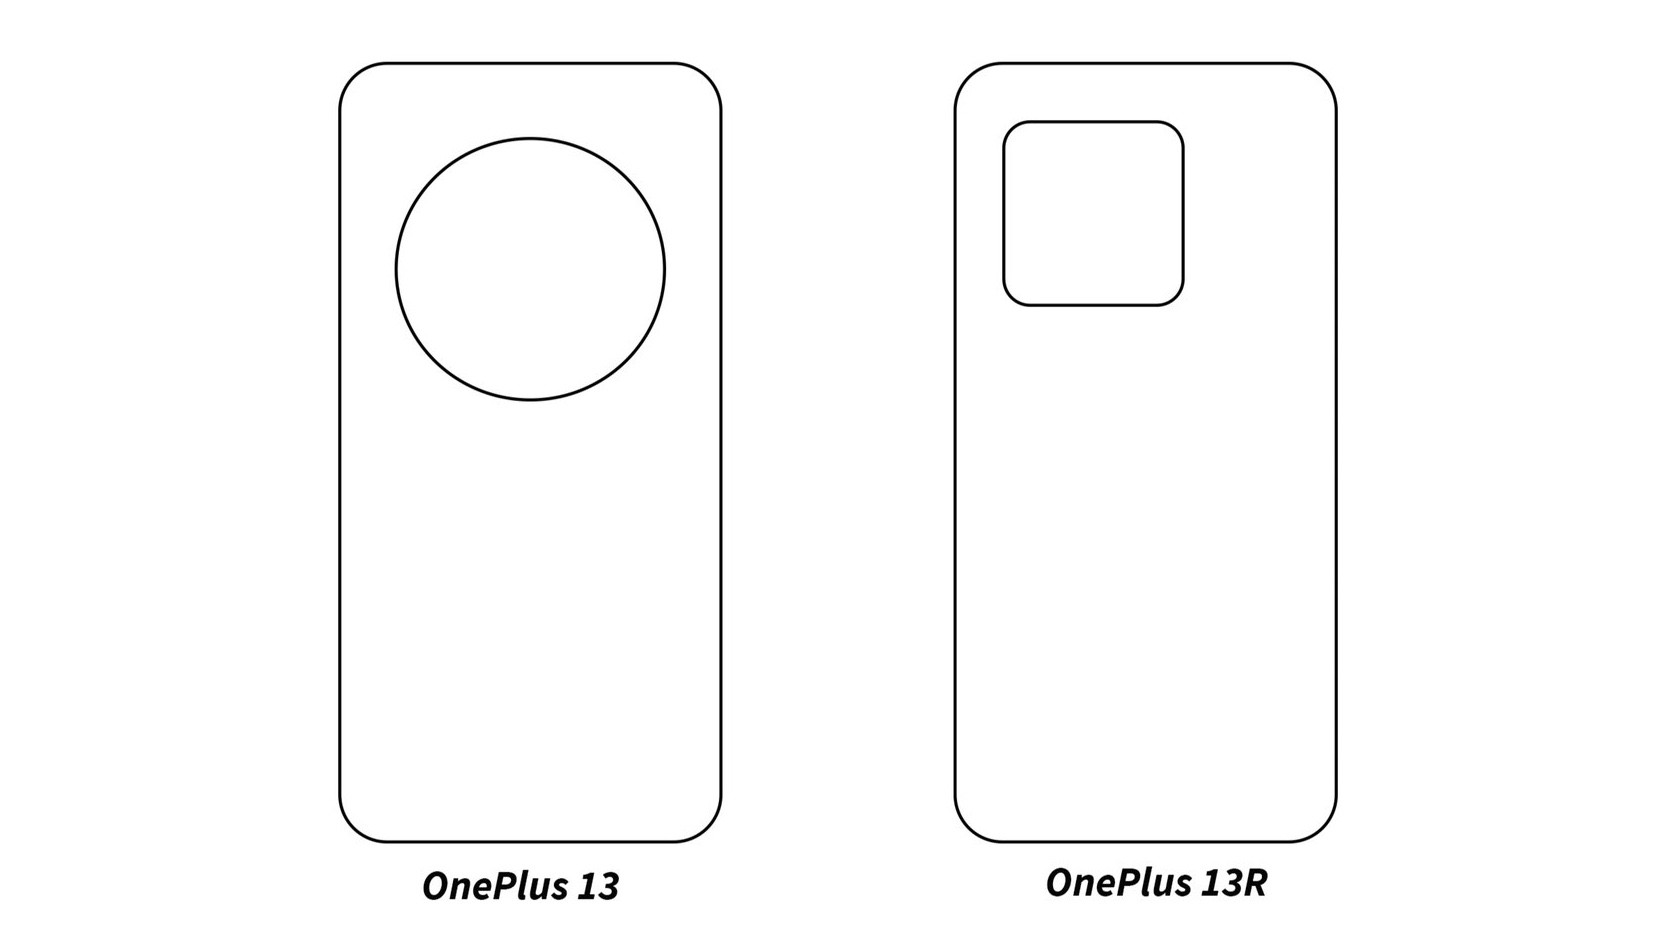 עיבוד עיצובי של OnePlus 13 ו-OnPlus 13R